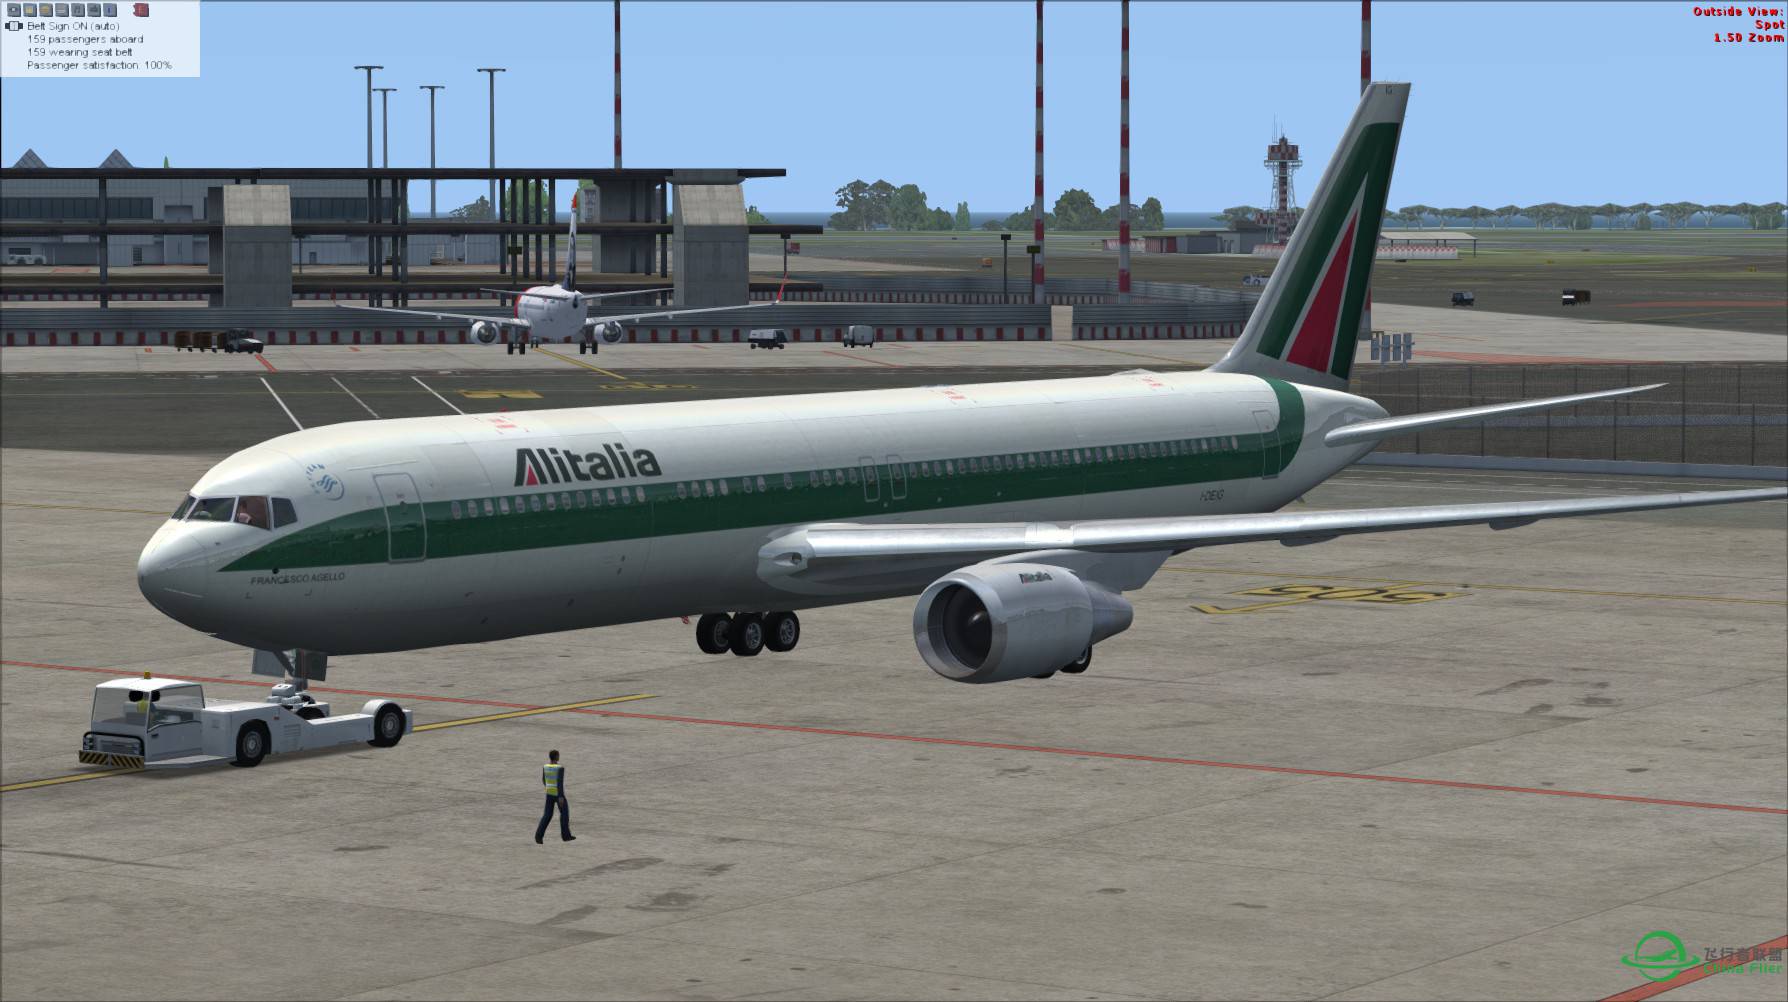 意大利航空 767-300ER 罗马-吉隆坡-3491 